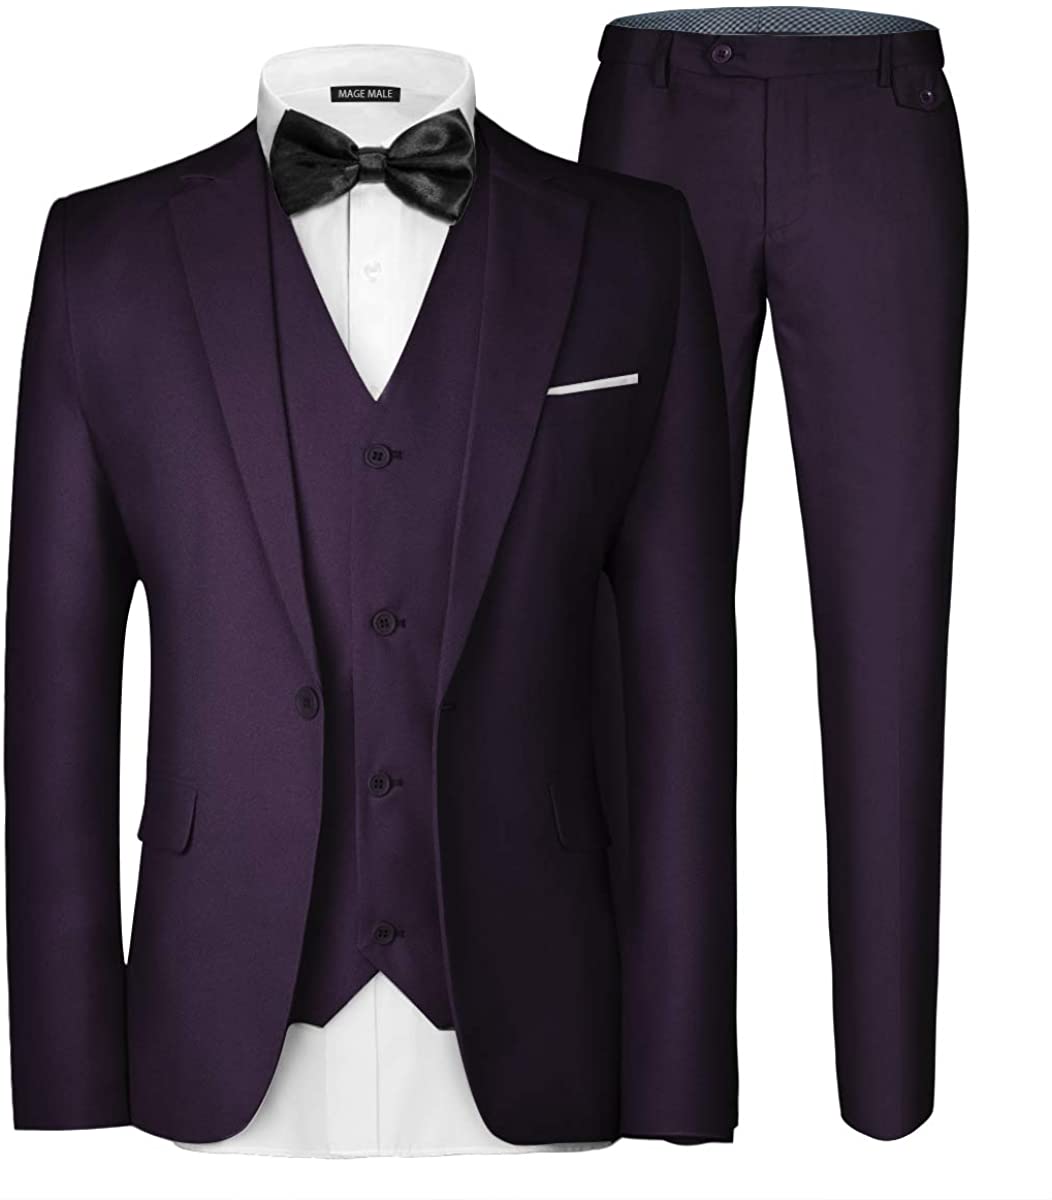 Men's 3 Piece Elegant Purple Formal Suit Set